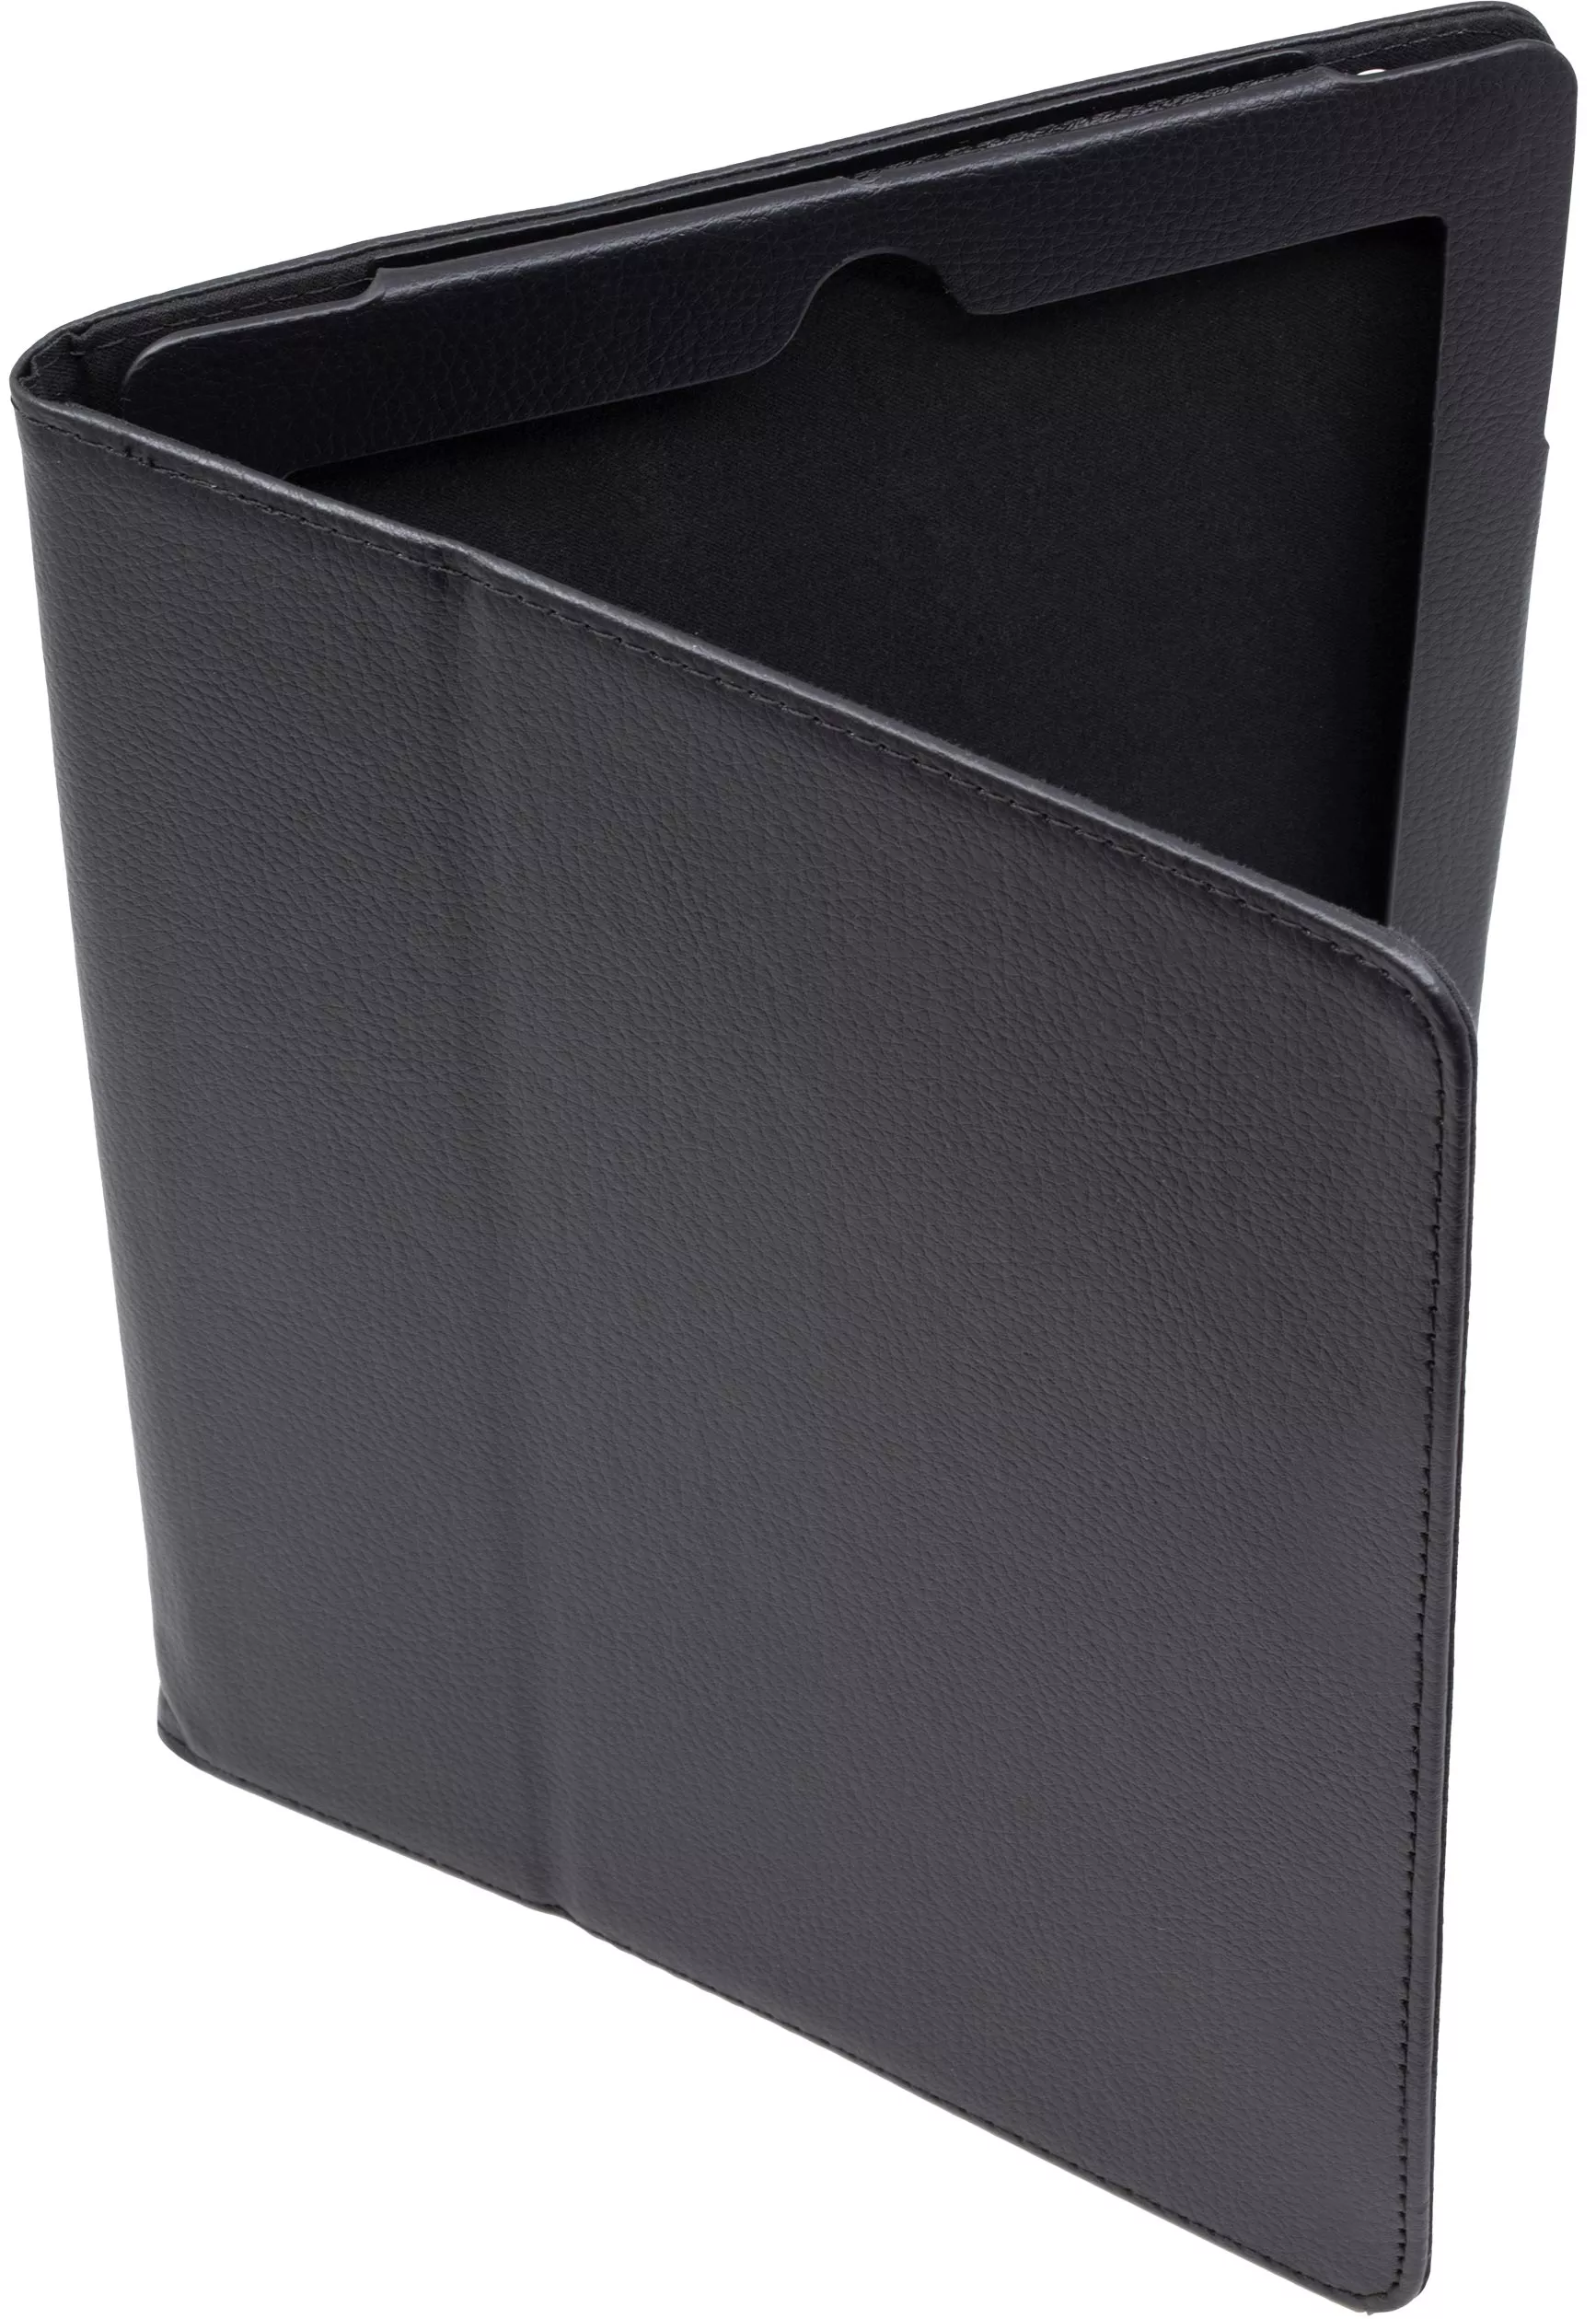 Чехол Stand для iPad 2/3/4 - Черный. Вид 1